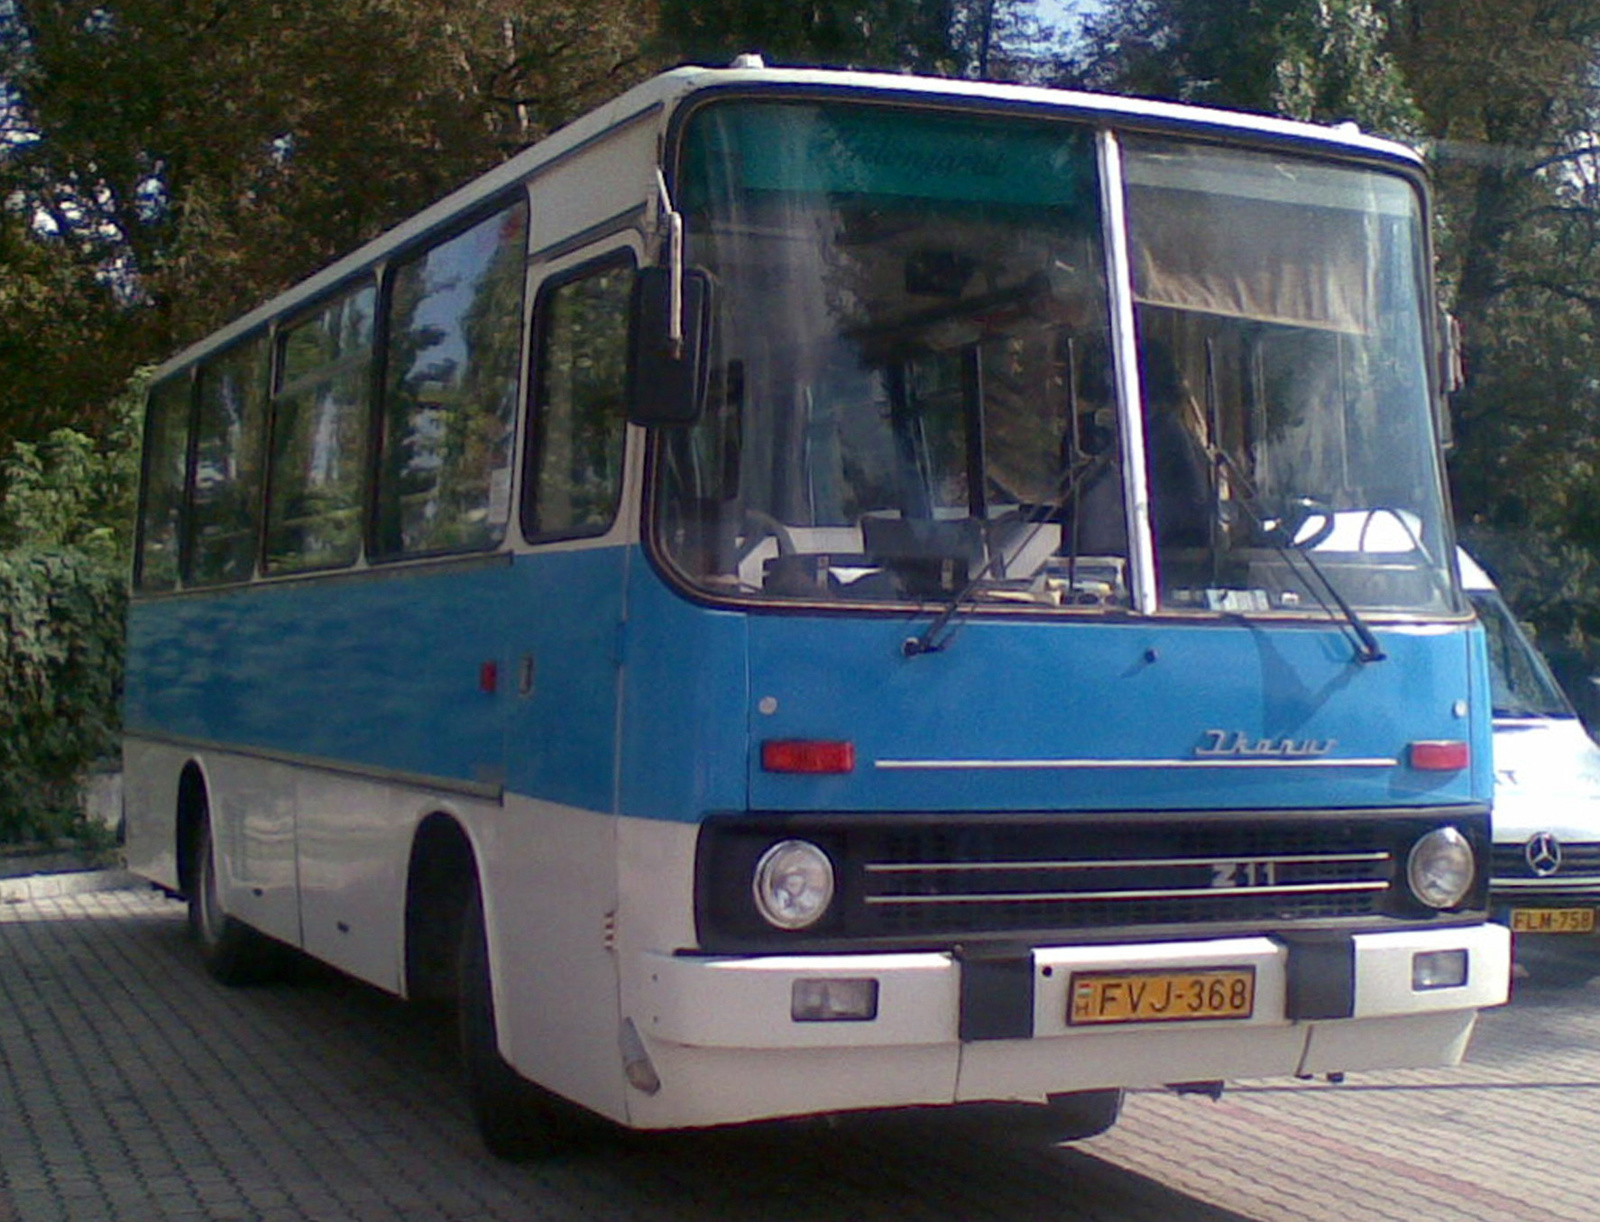 FVJ-368